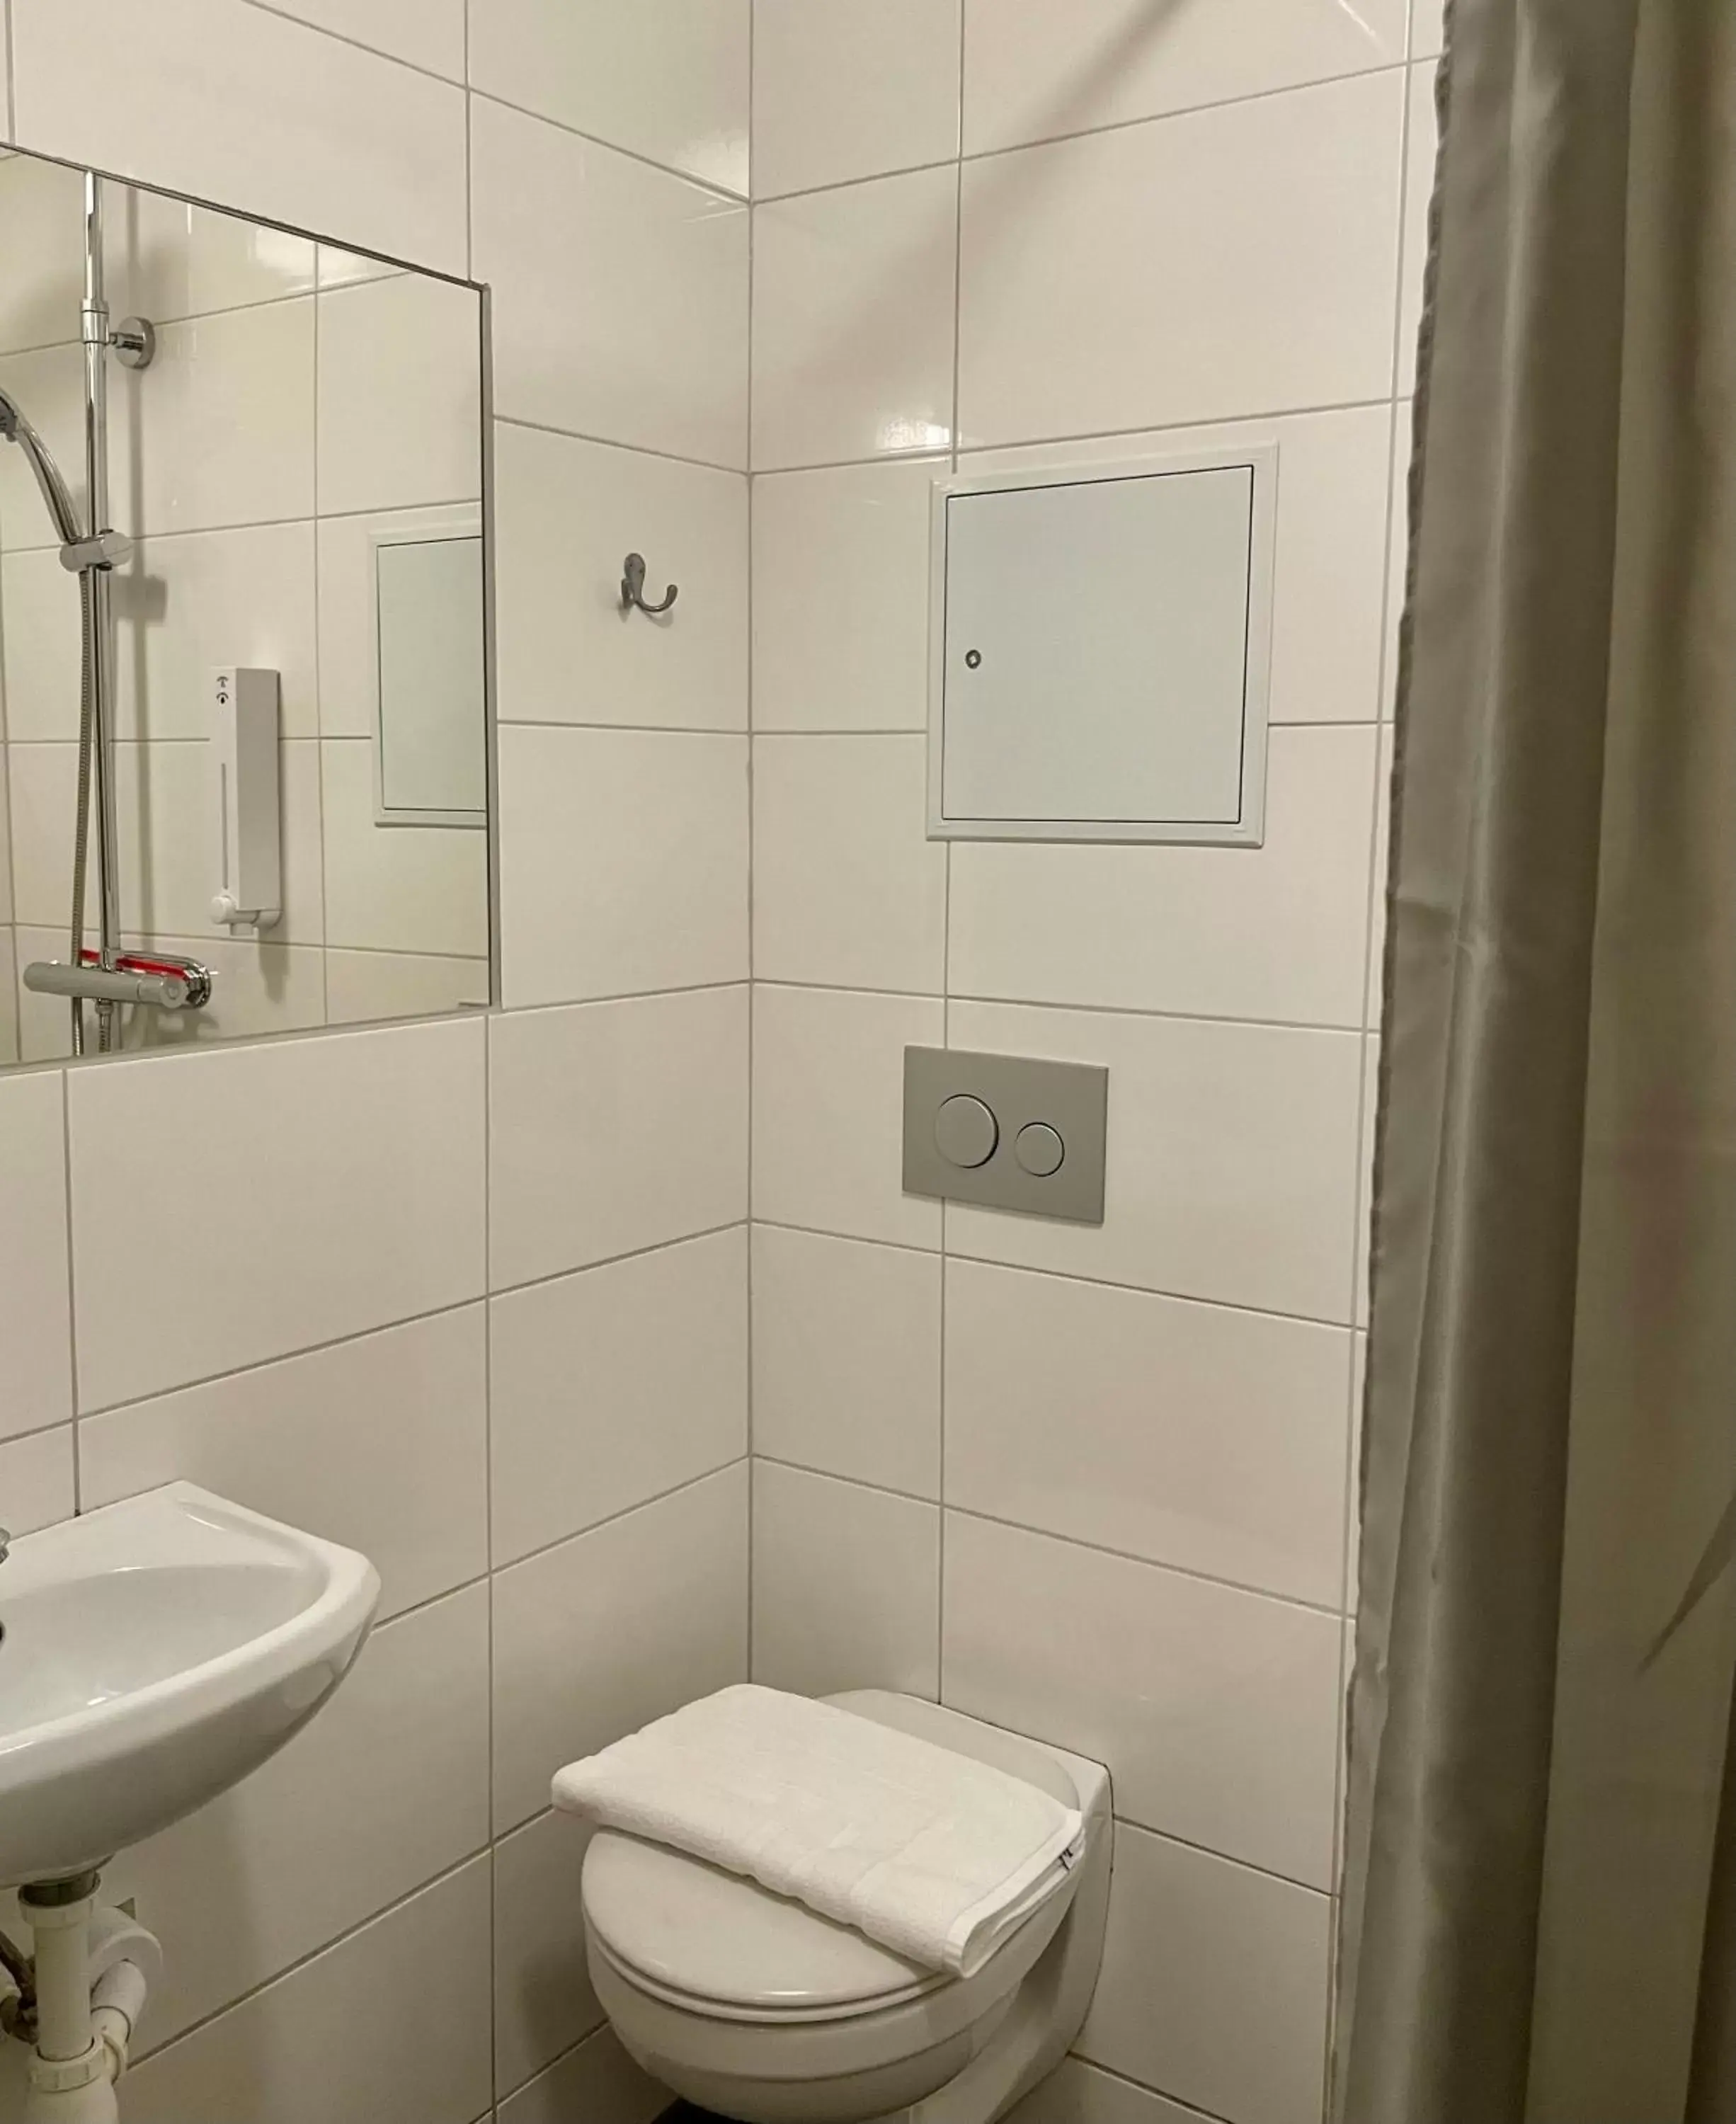 Bathroom in Birka Hotel